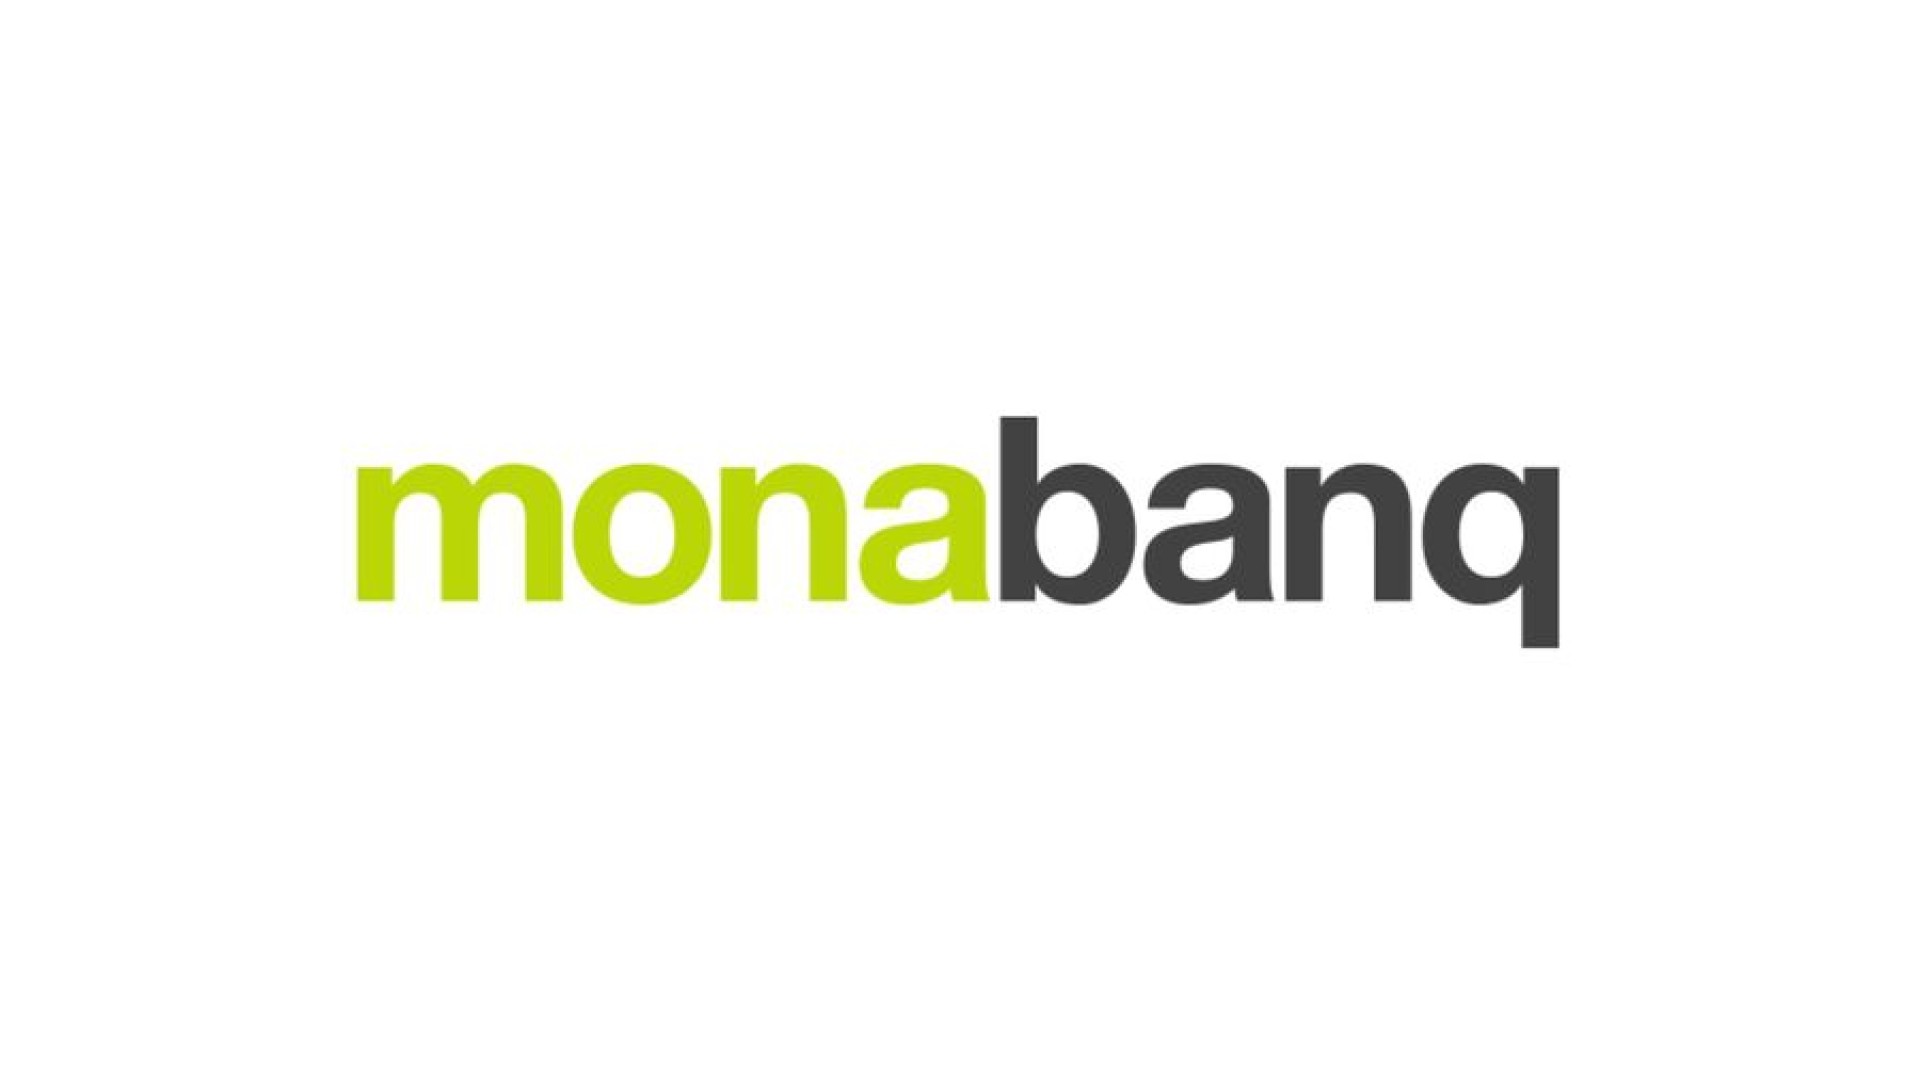 Votre guide pour débuter avec Monabanq en tant qu'auto-entrepreneur